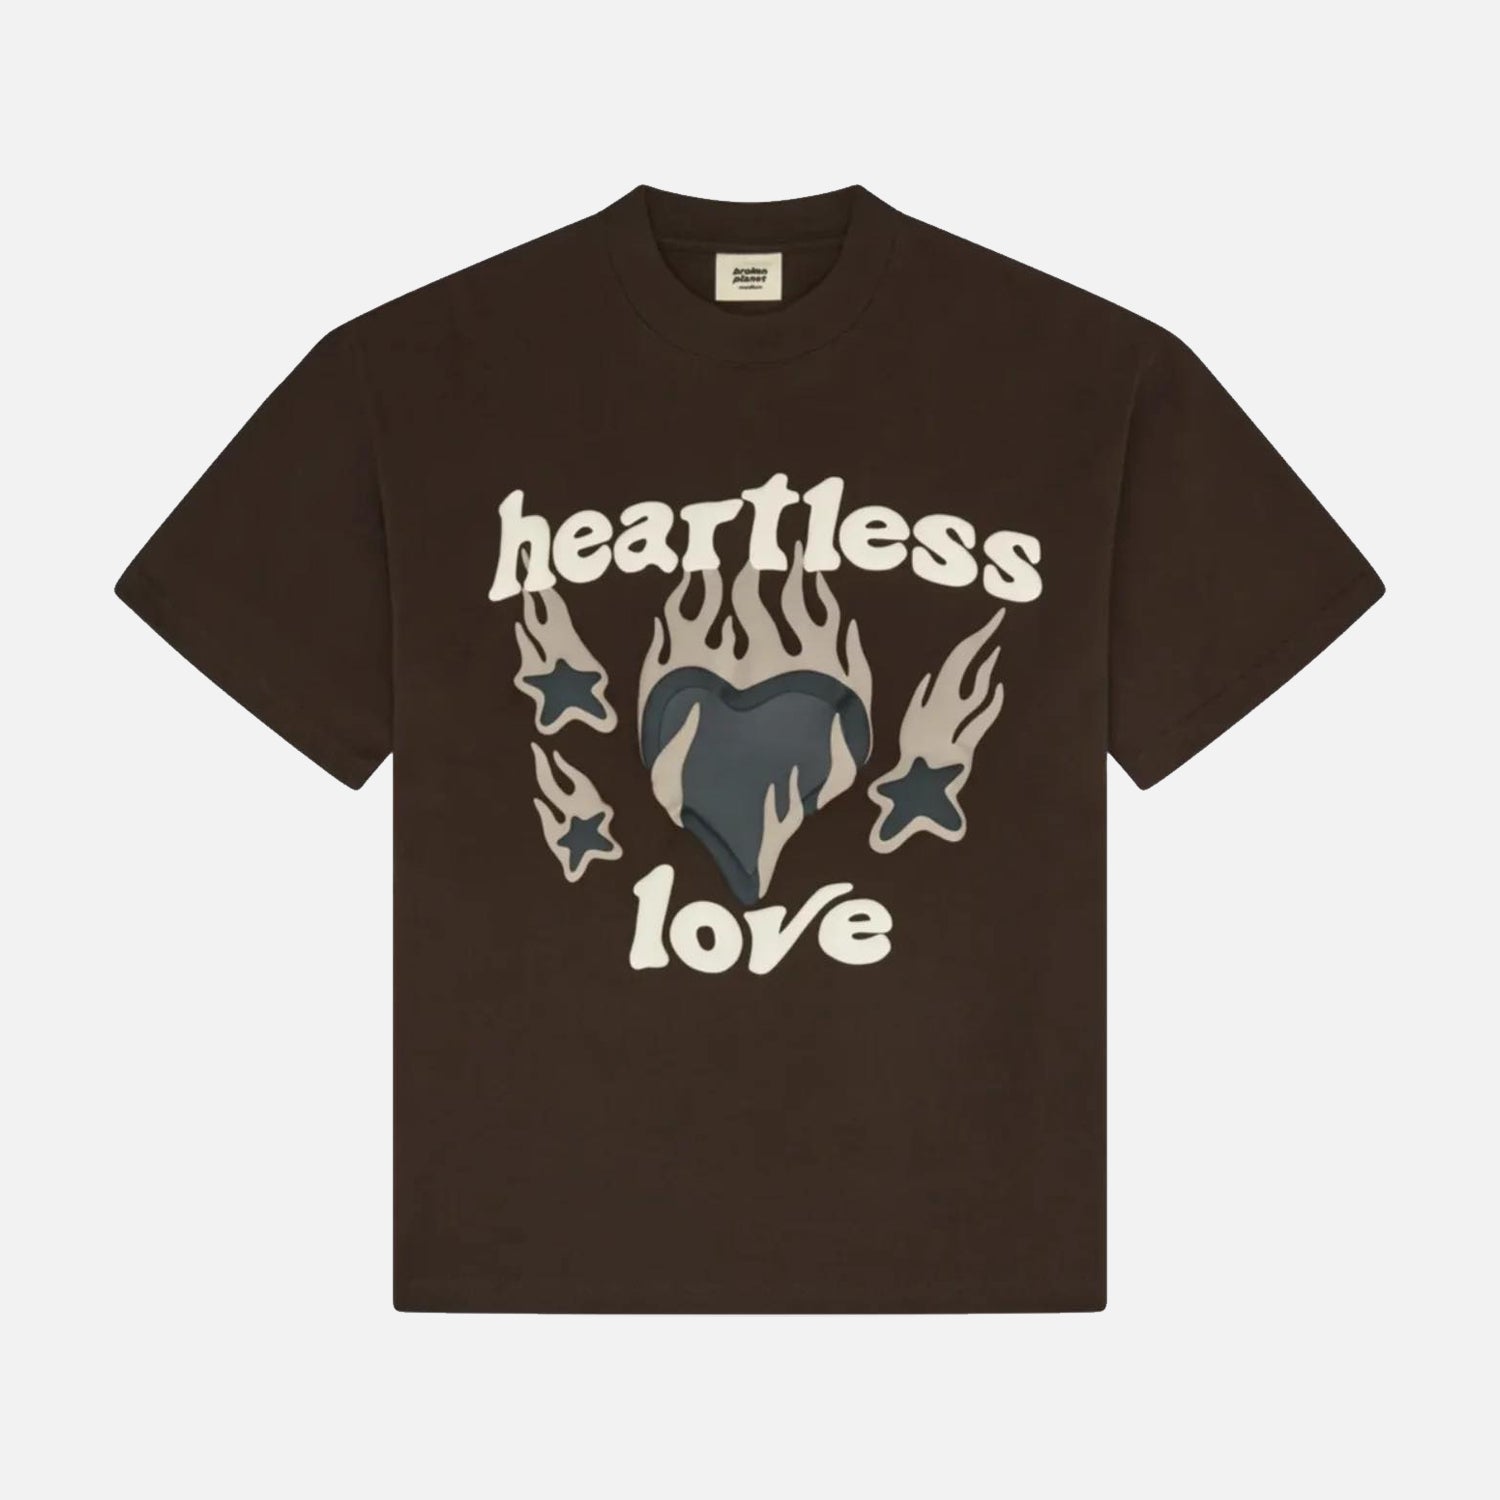 Broken Planet Market Heartless Love T-Shirt - Mocha Brown